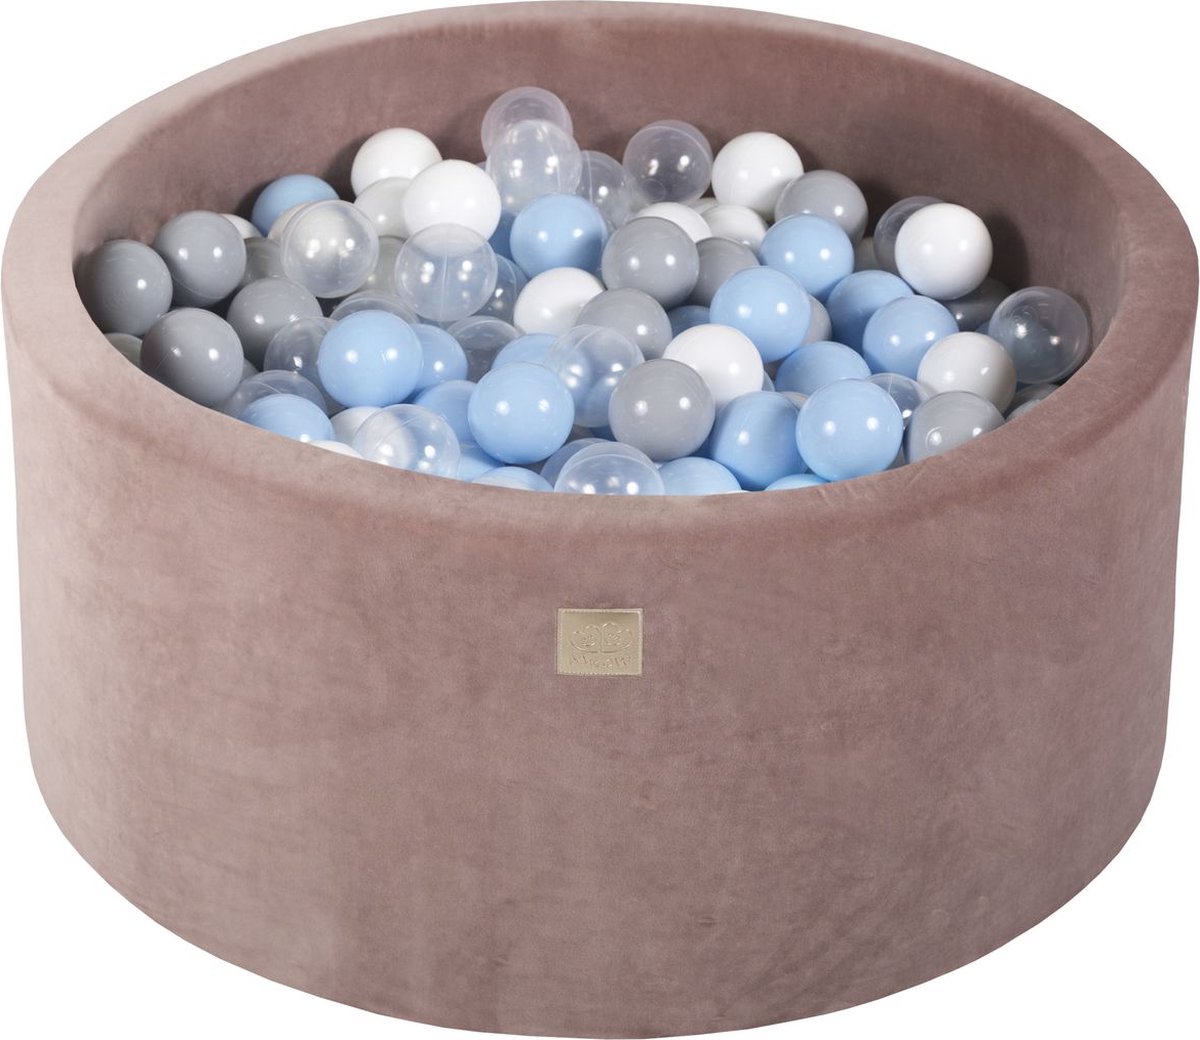 Afbeelding van product Ronde ballenbak VELVET 90x40 - Beige incl 300 ballen - Baby Blauw, Wit, Grijs, Transparant | Ballenbakje.nl